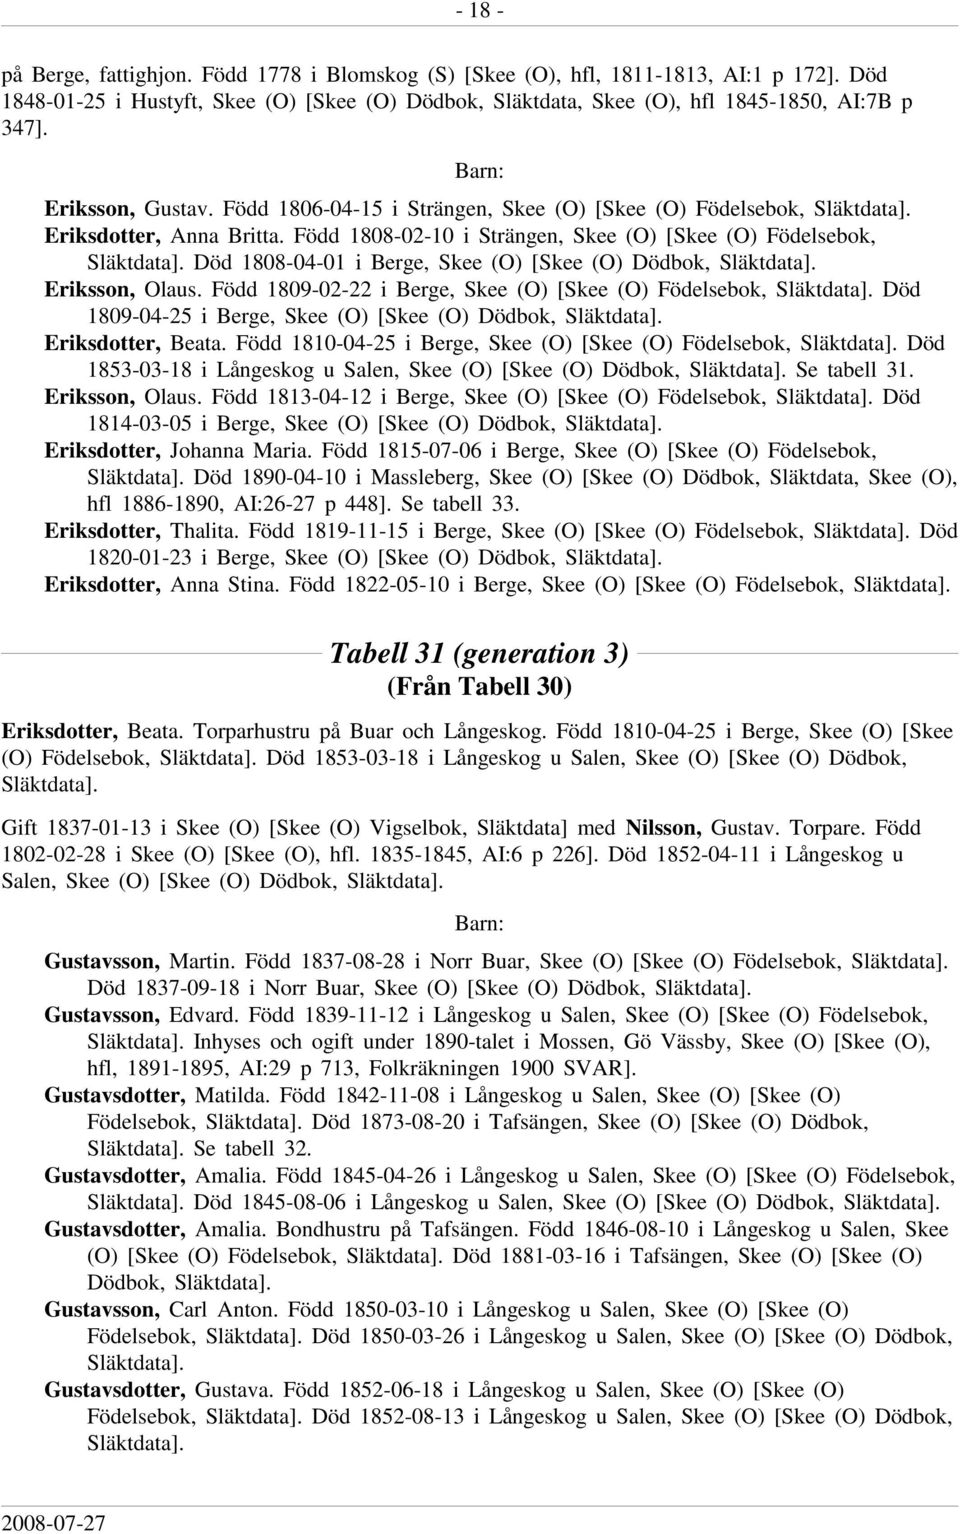 Född 1808-02-10 i Strängen, Skee (O) [Skee (O) Födelsebok, Död 1808-04-01 i Berge, Skee (O) [Skee (O) Dödbok, Eriksson, Olaus.